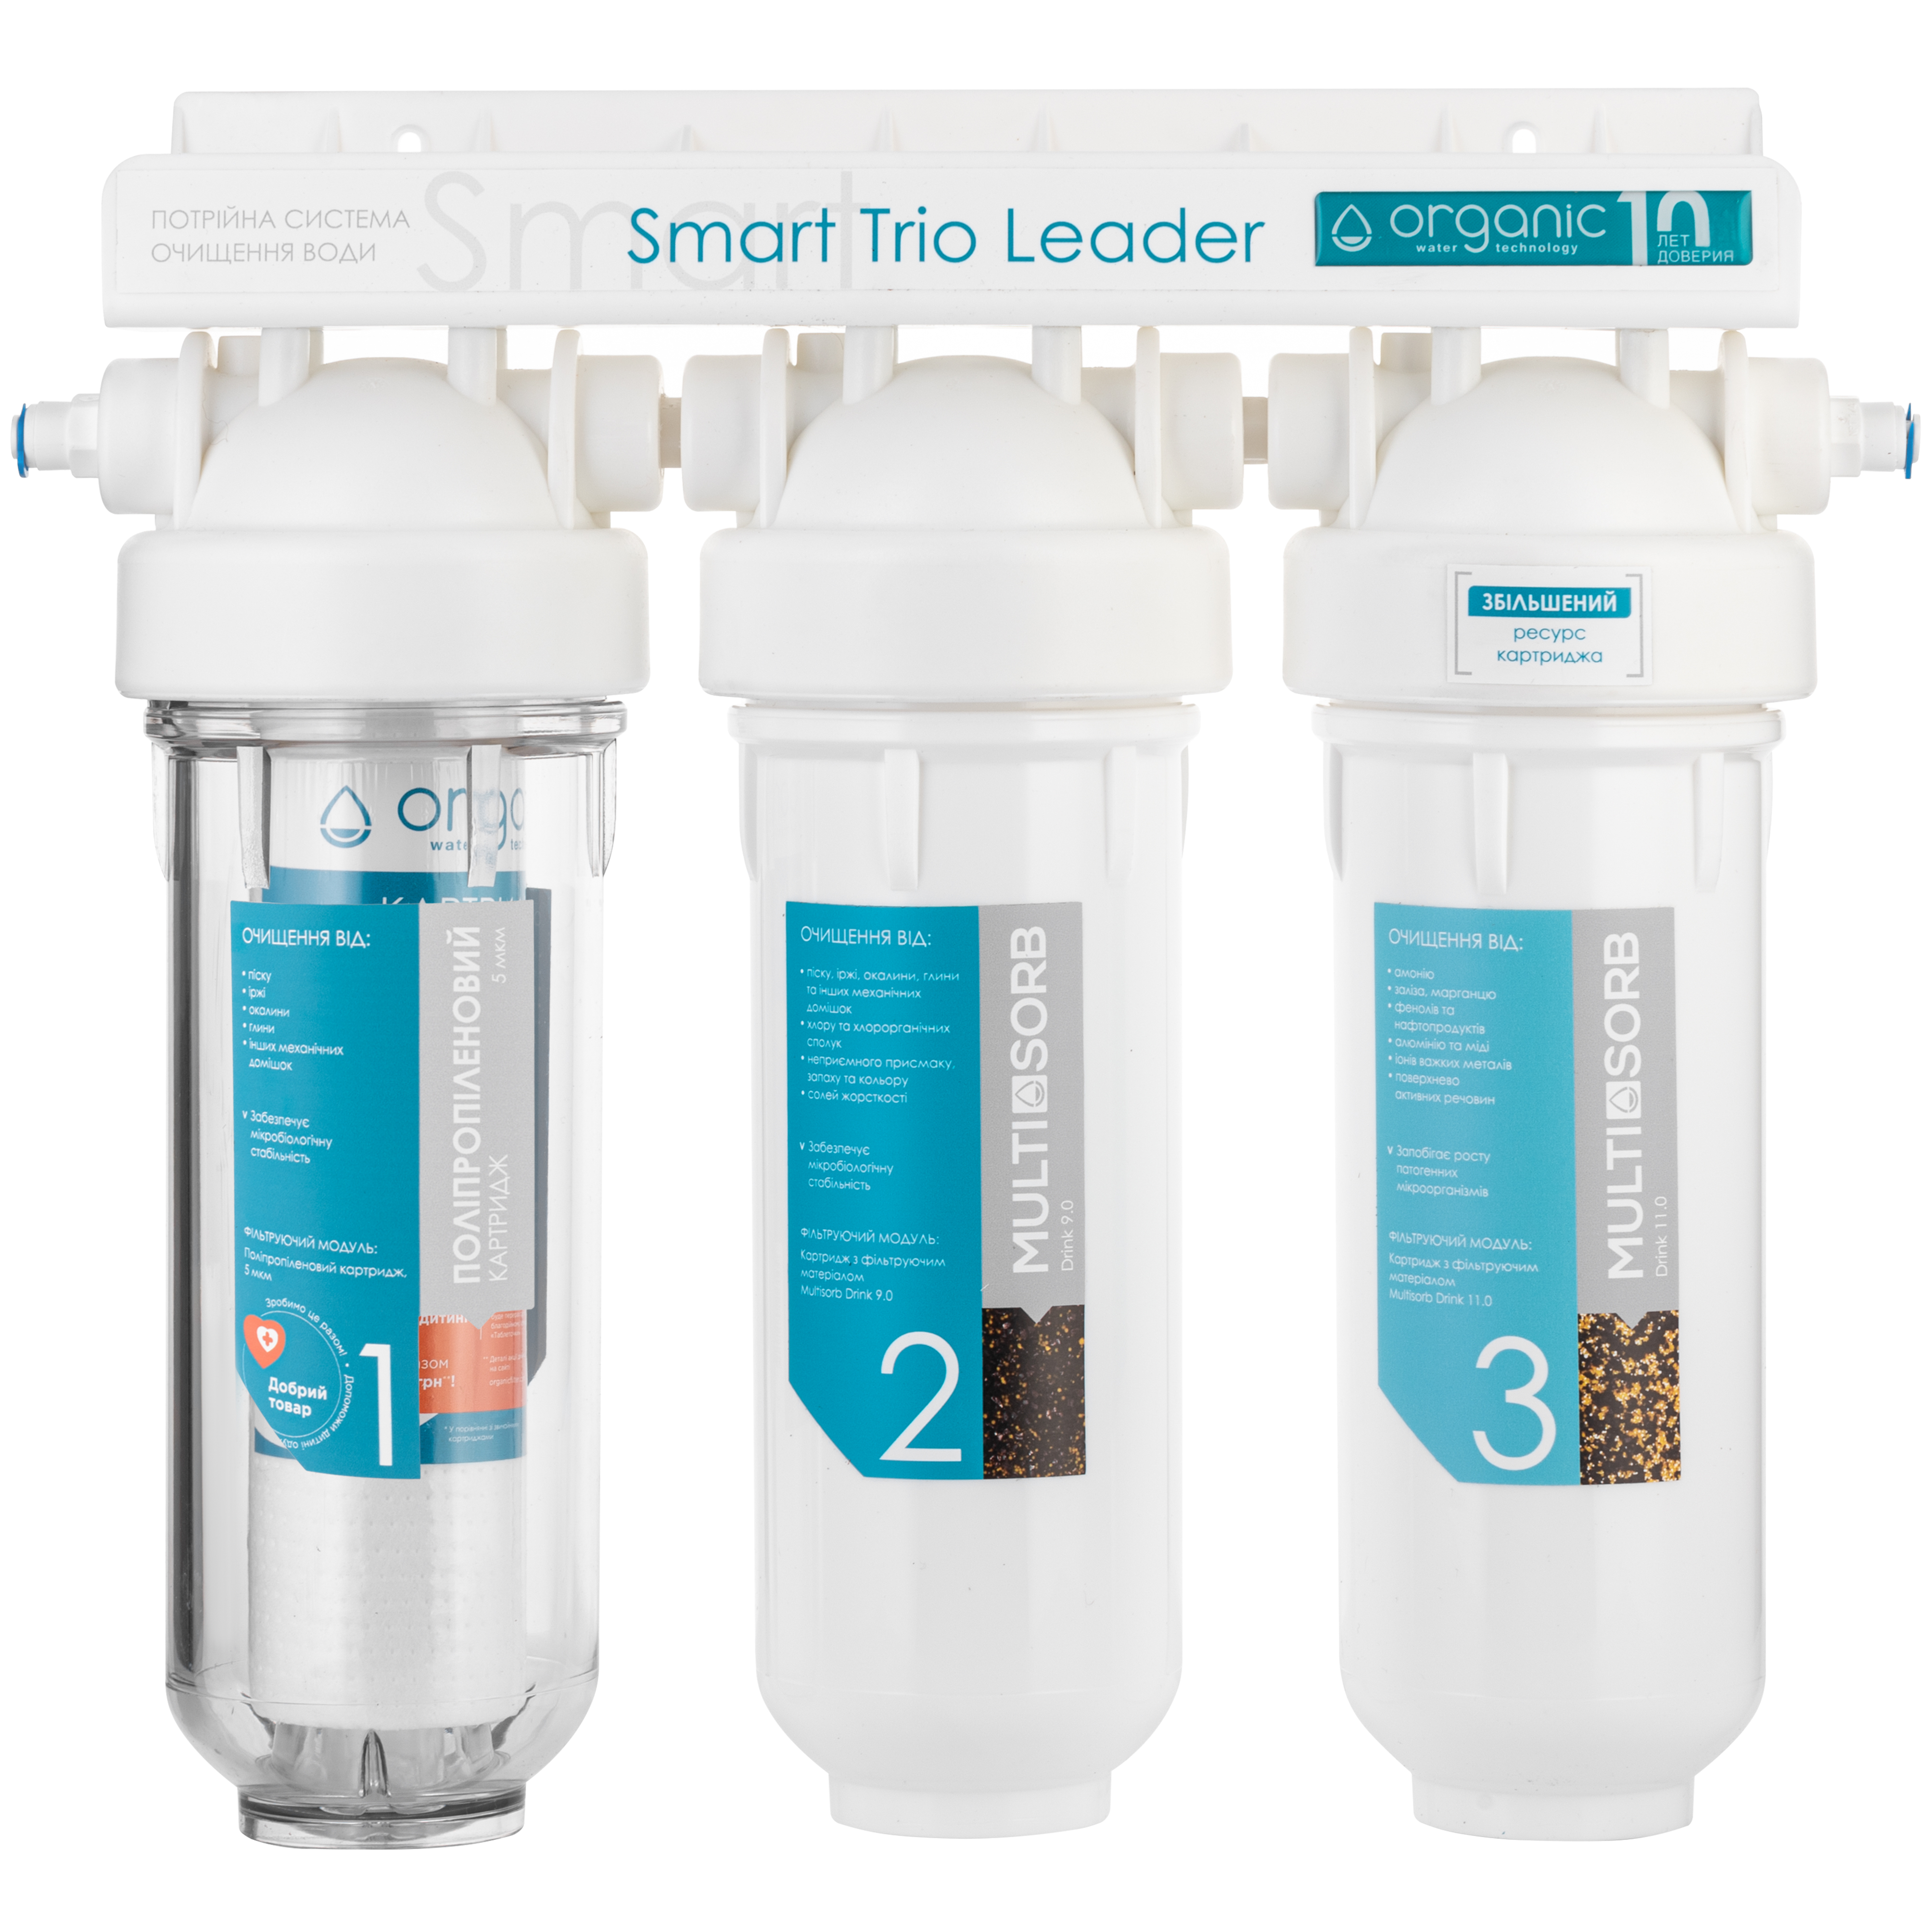 Цена тройной фильтр organic Organic Smart TRIO LEADER в Киеве